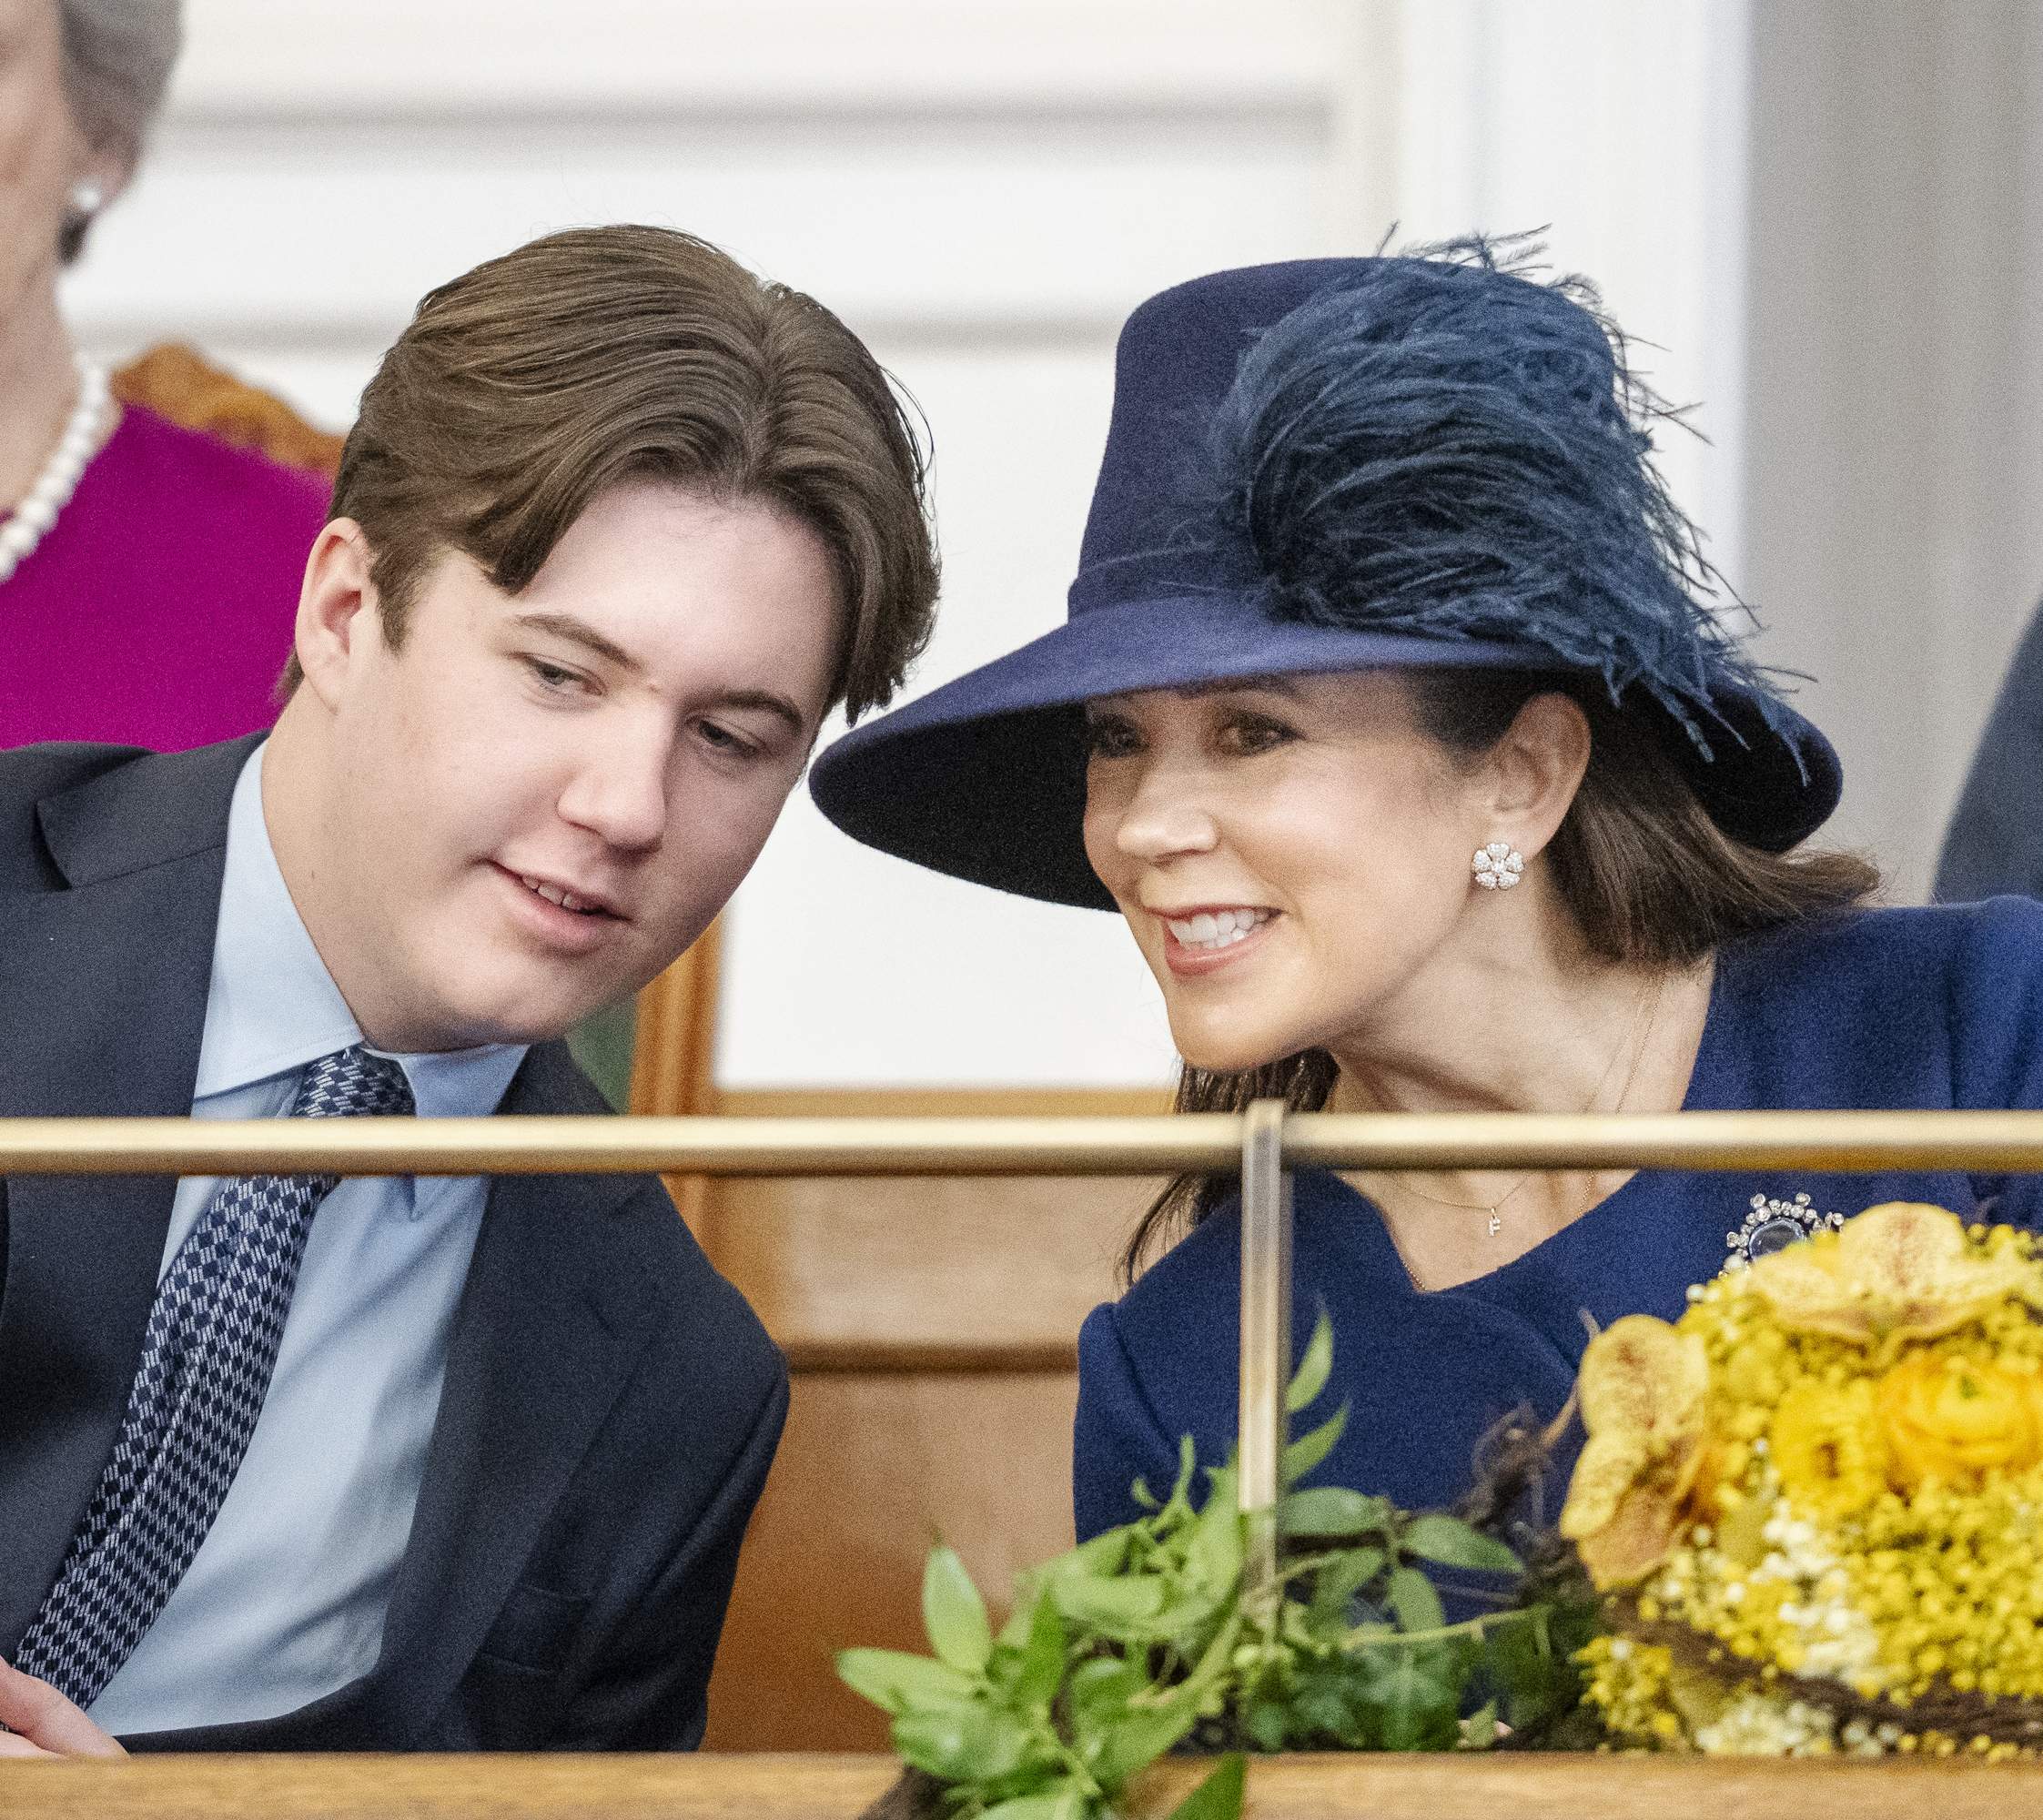 Christian de Dinamarca a por la nueva soltera de oro royal, ha dejado al novio